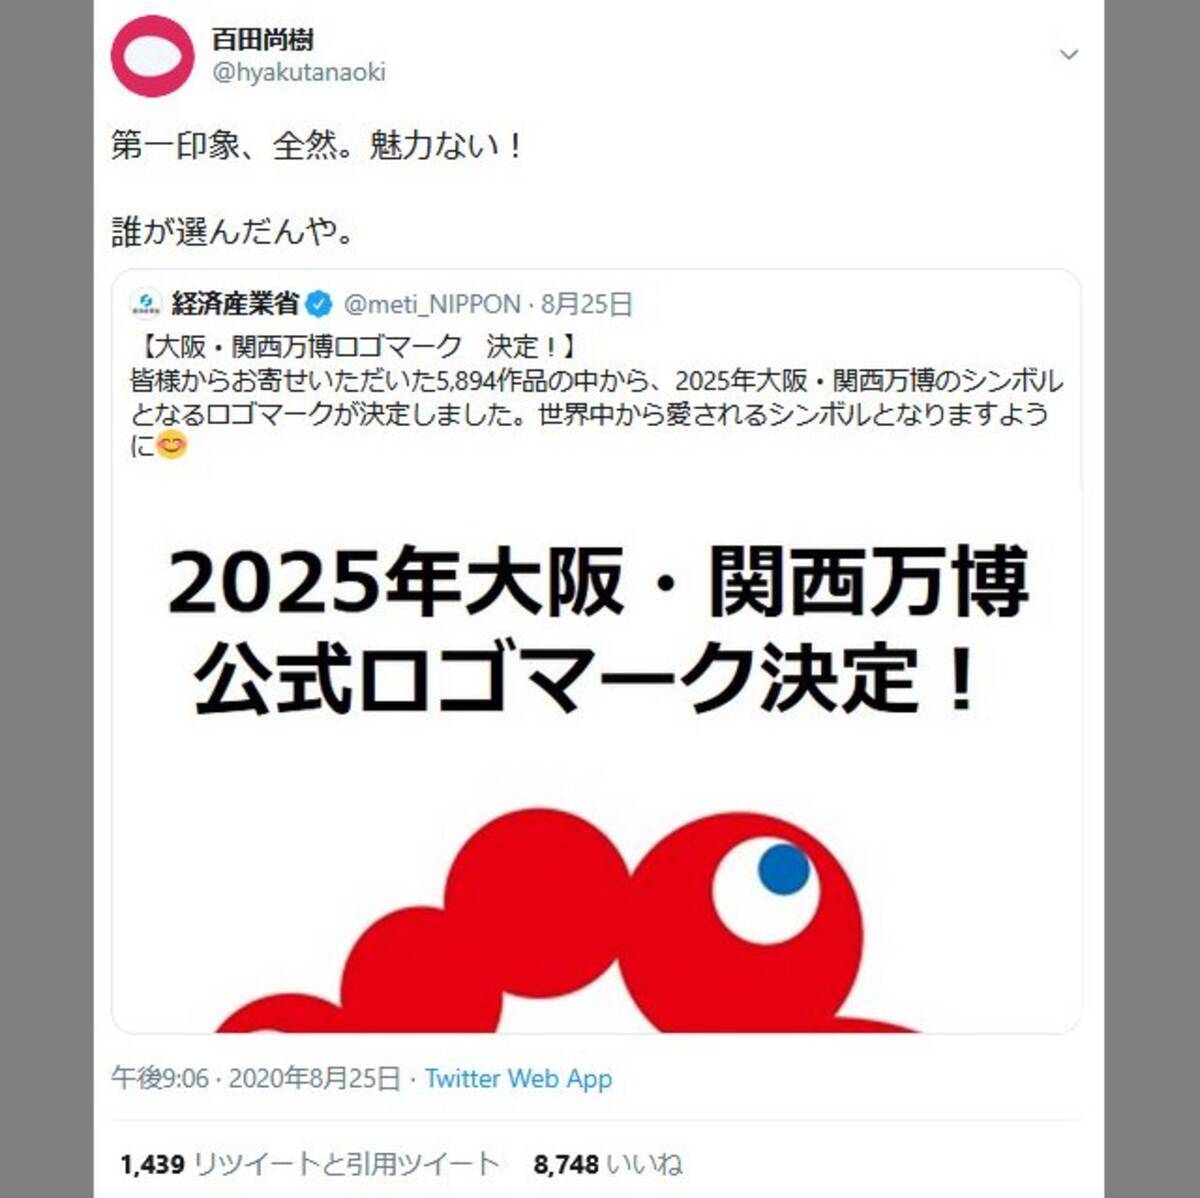 25年大阪万博のロゴマークに百田尚樹さん 第一印象 全然 魅力ない 誰が選んだんや と苦言ツイートも二次創作は盛り上がる 年8月27日 エキサイトニュース